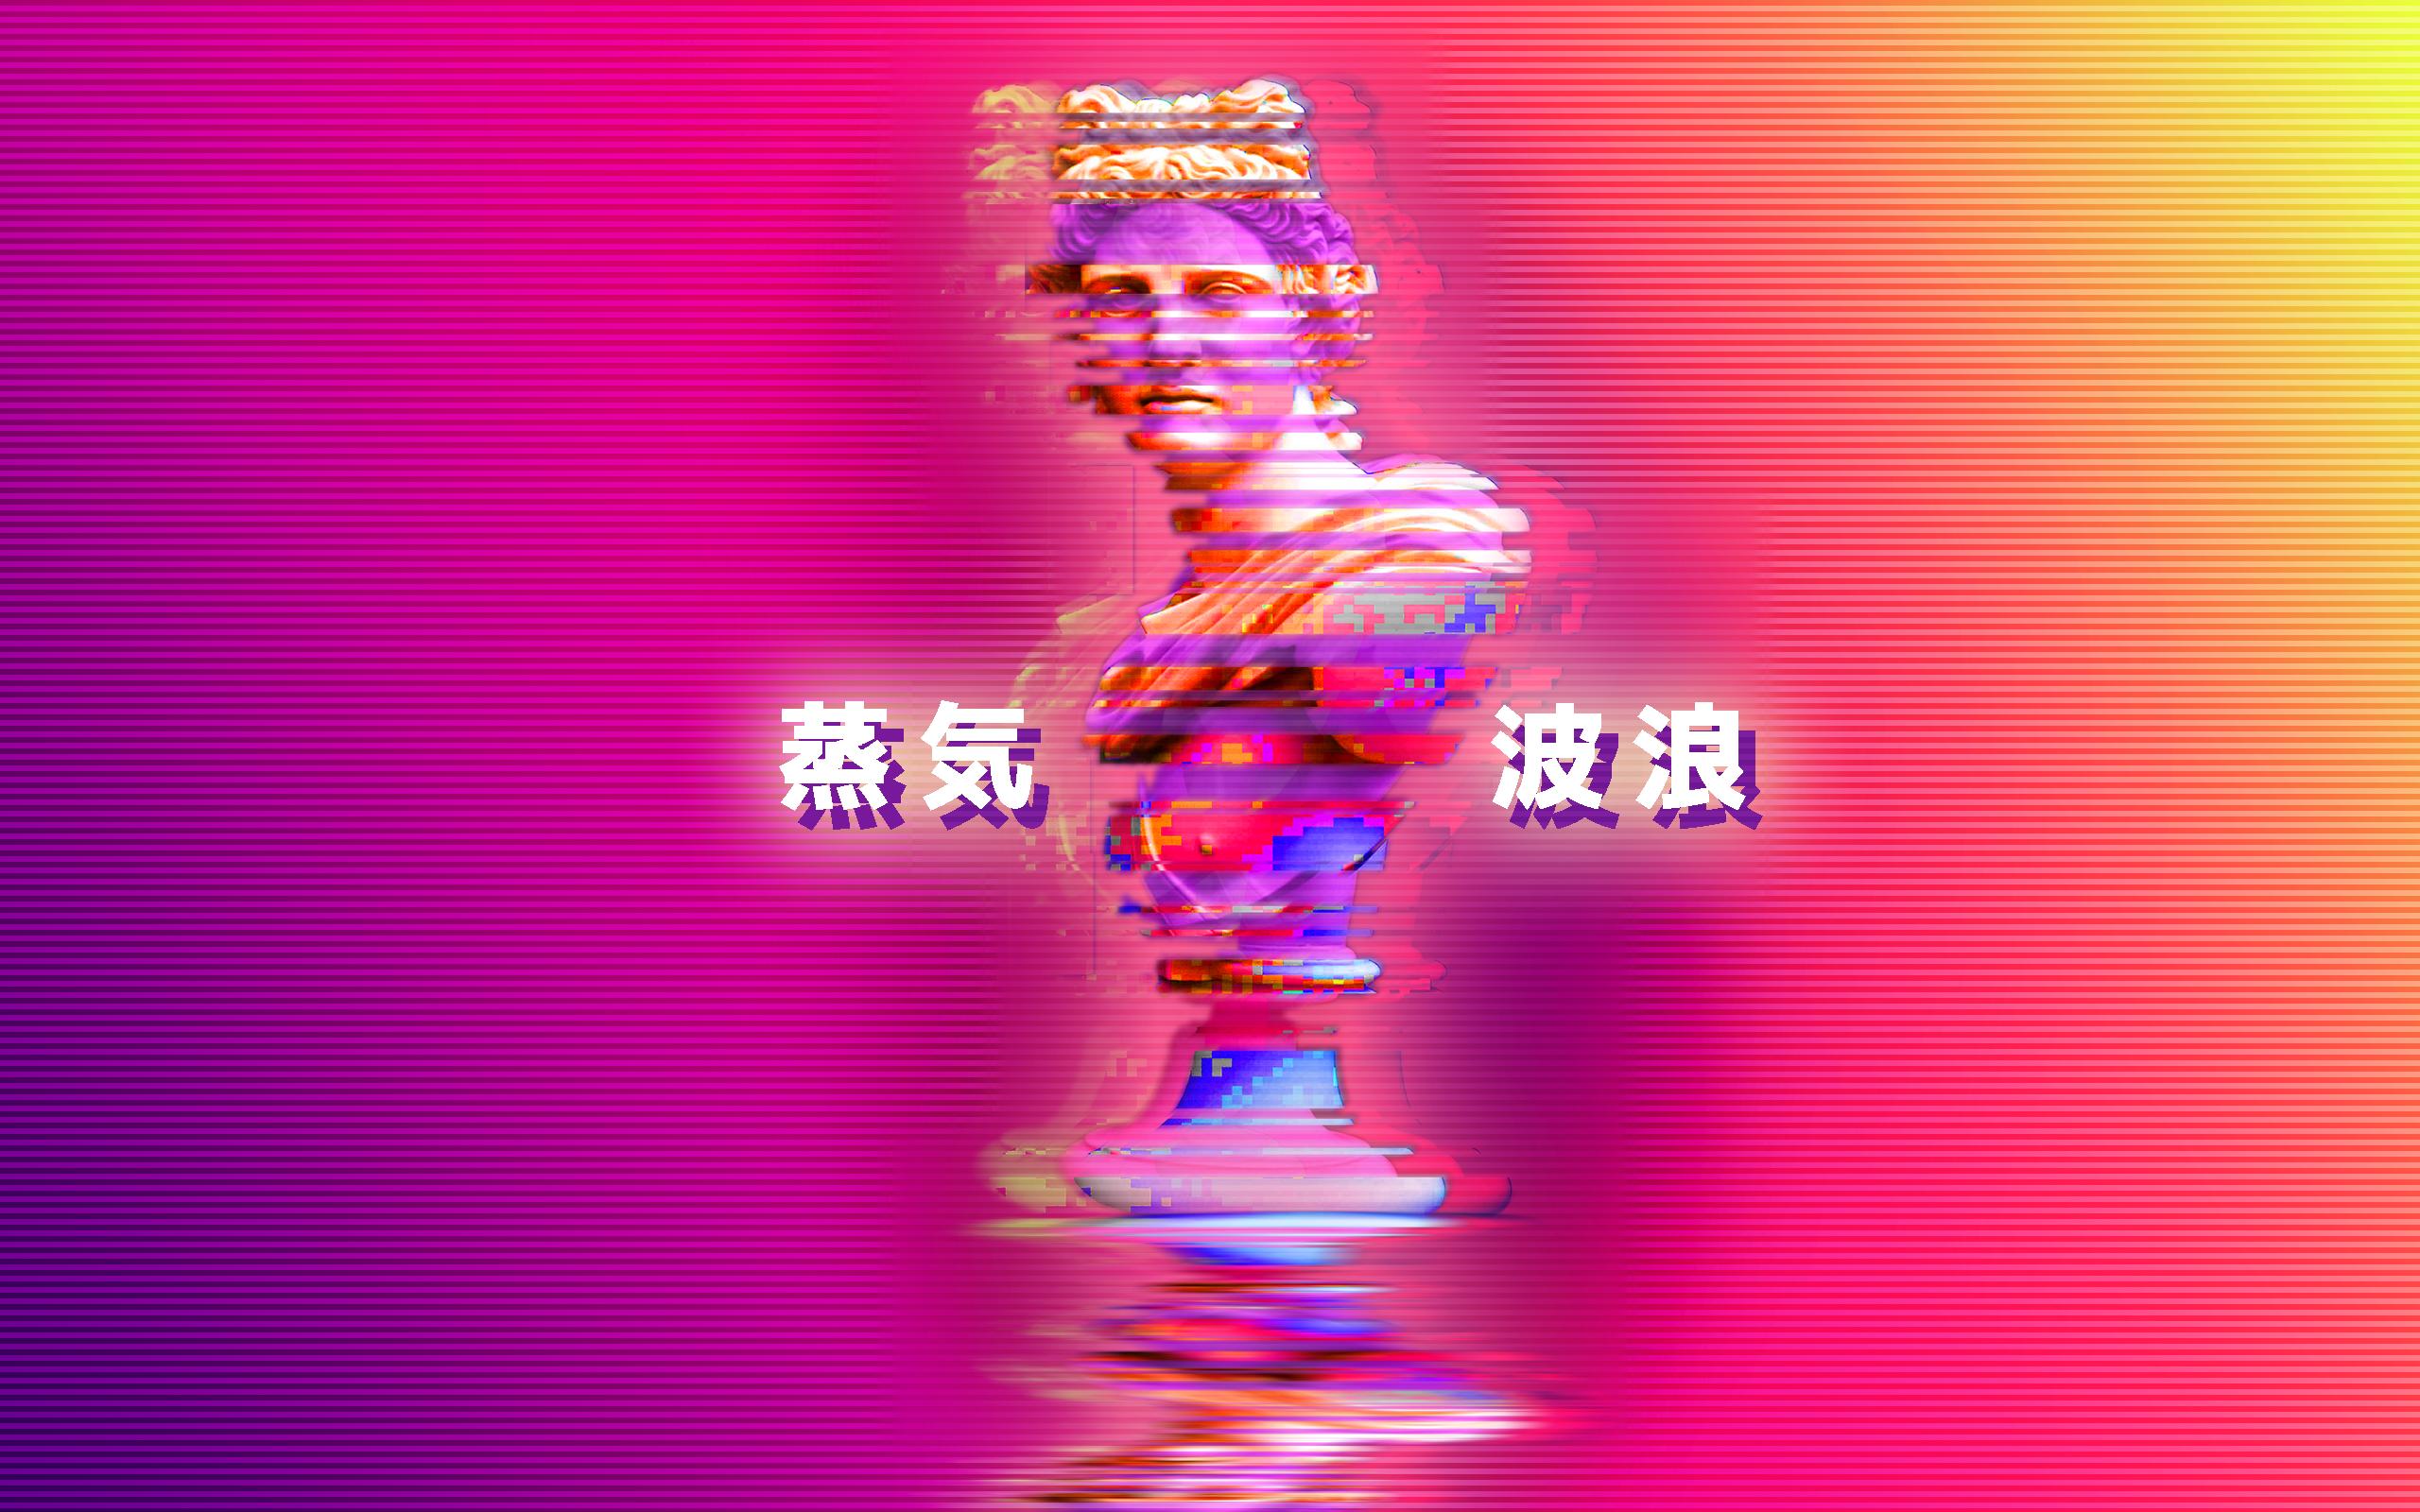 Vaporwave Bust Surreal Digital Art 2560x1600